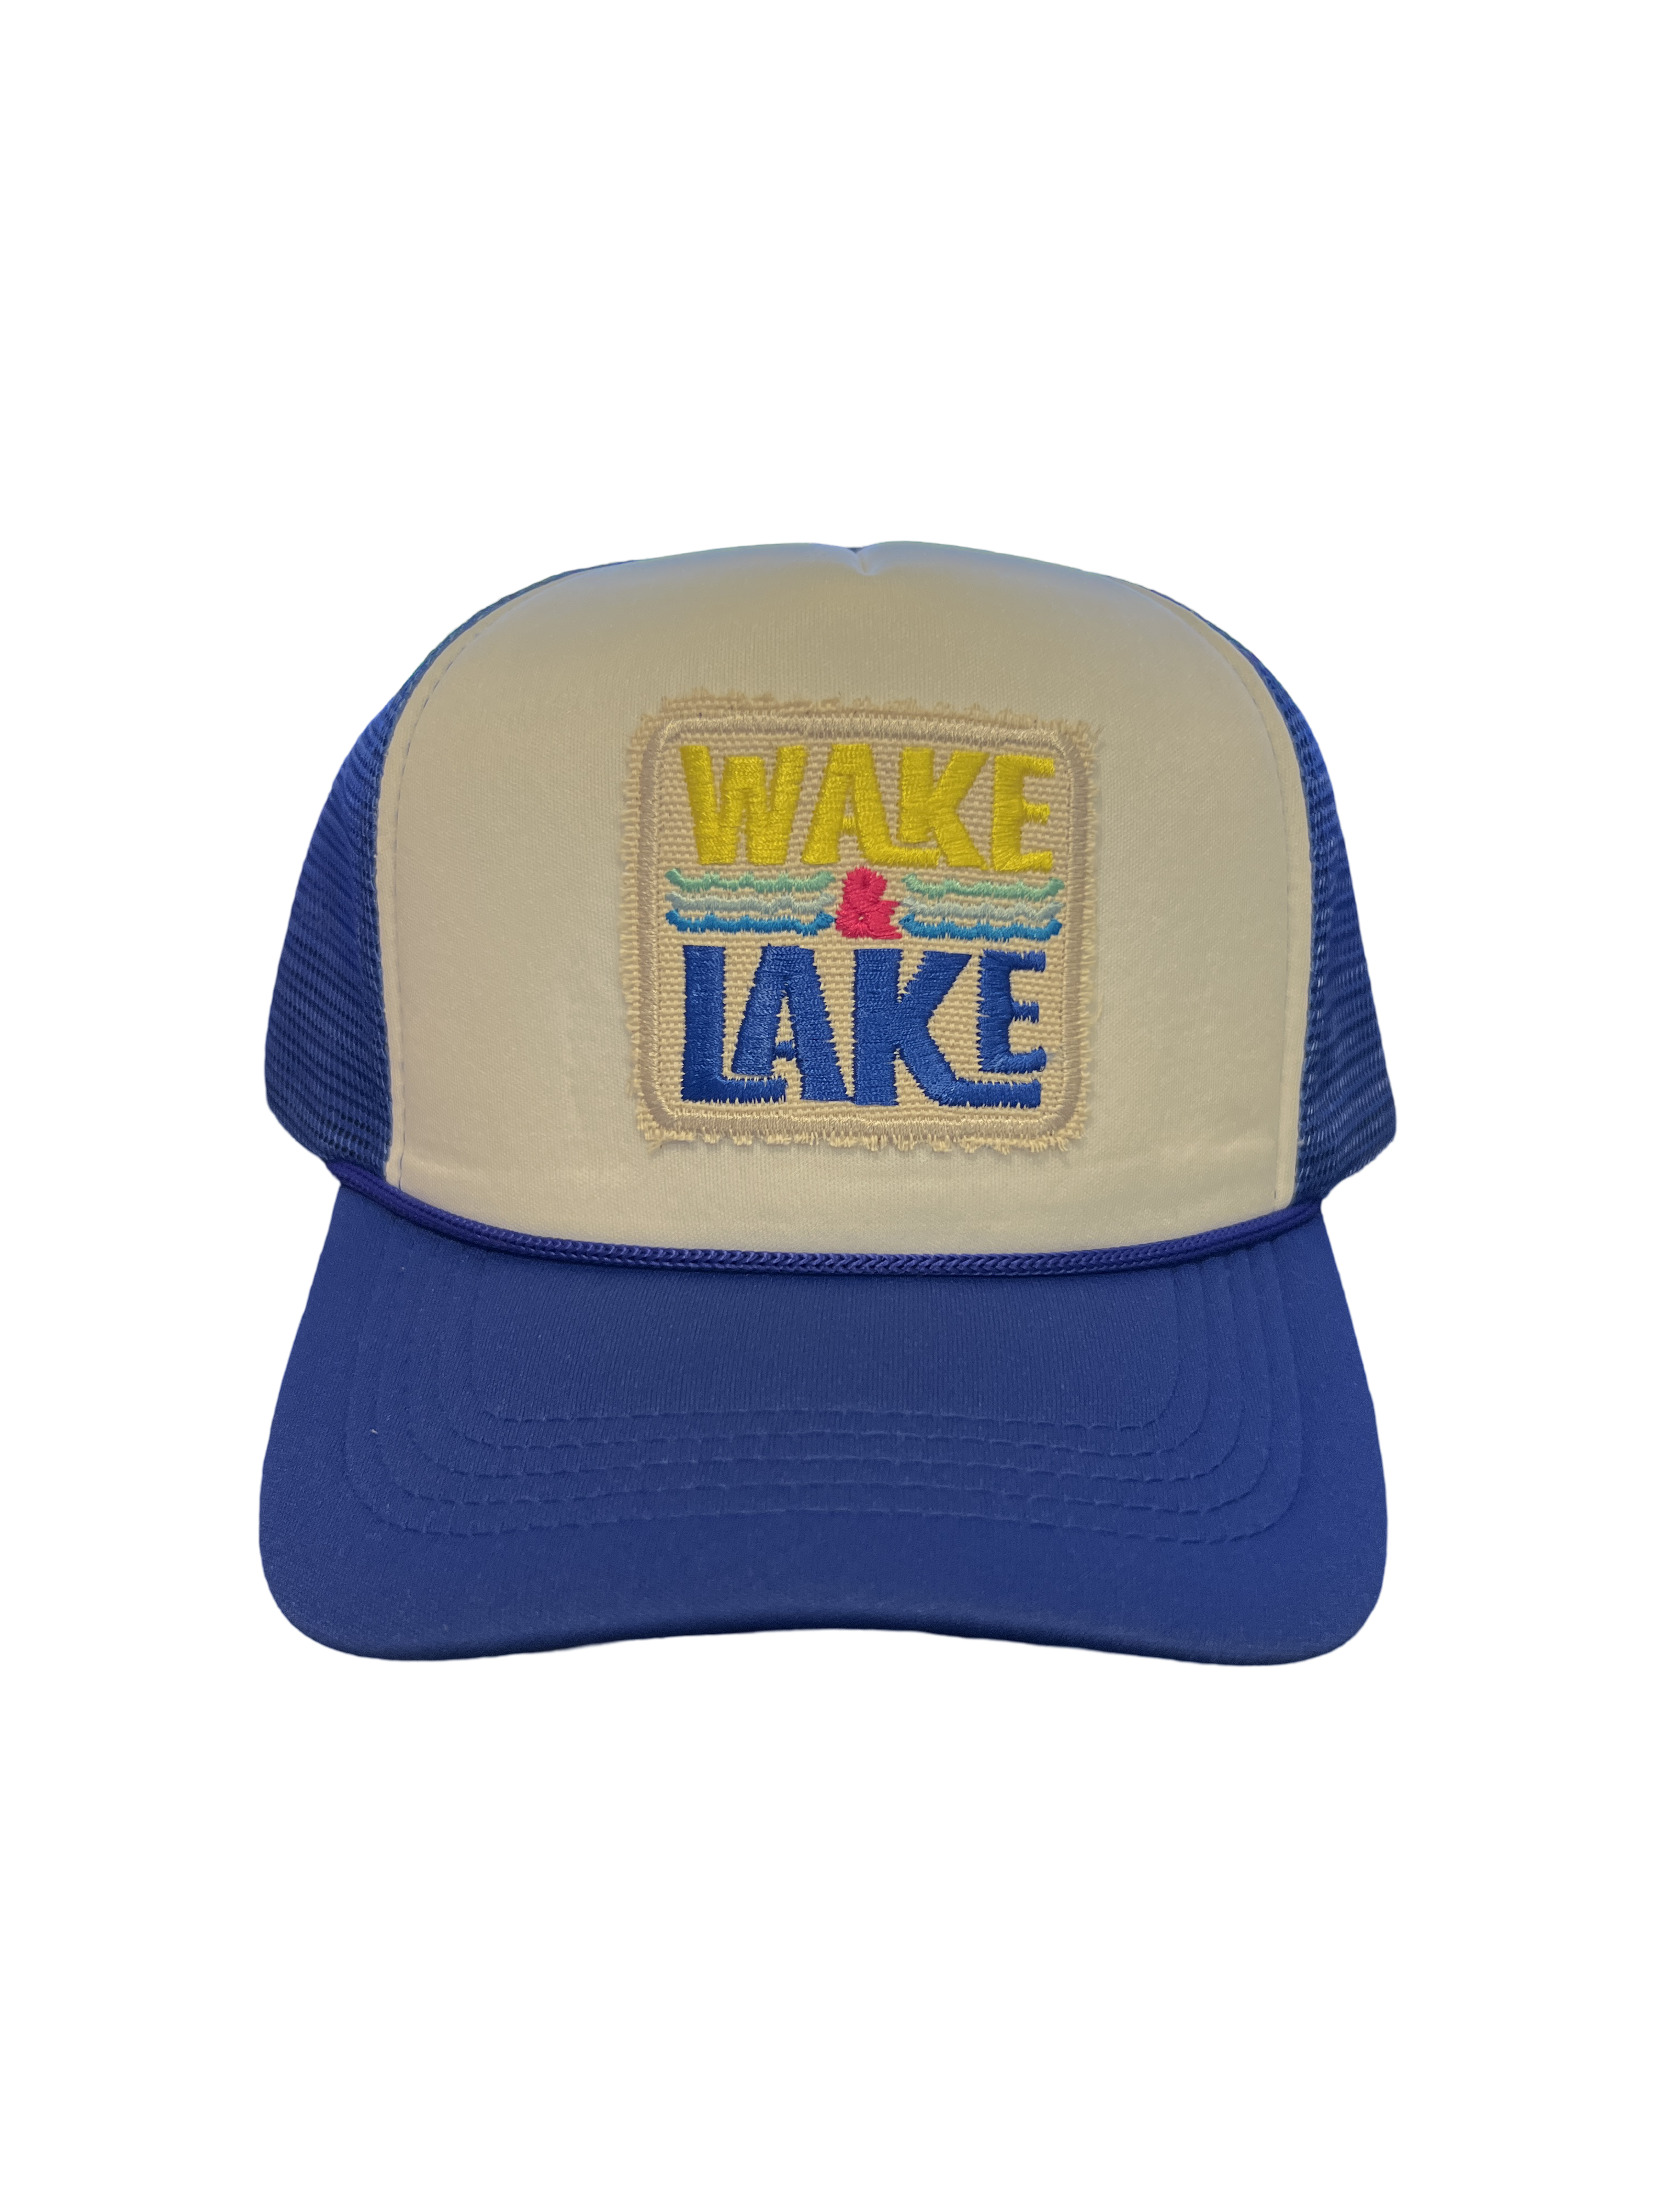 Foam Trucker Hat "Wake & Lake"